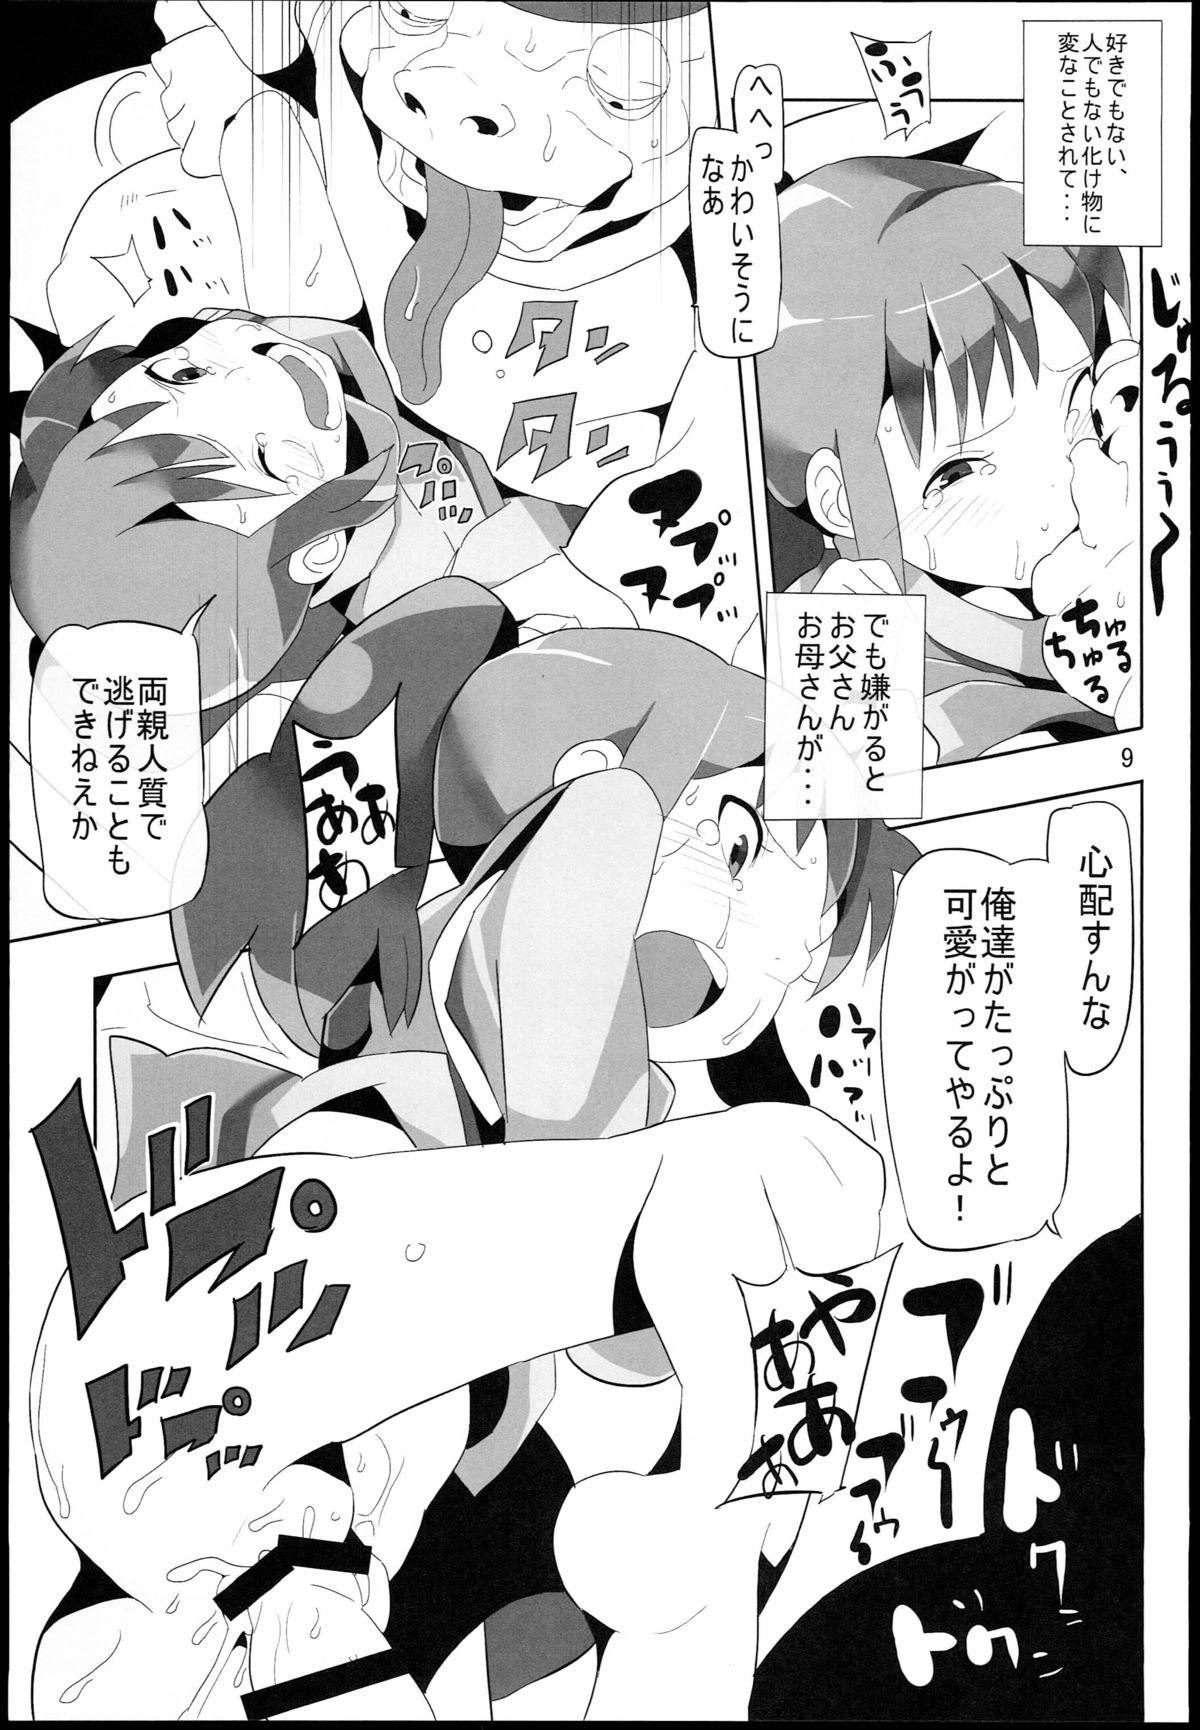 Vagina Sen to Chihiro to Ryoujoku no Yu-ya Isyukan Jigoku no Hibi - Spirited away Chat - Page 9